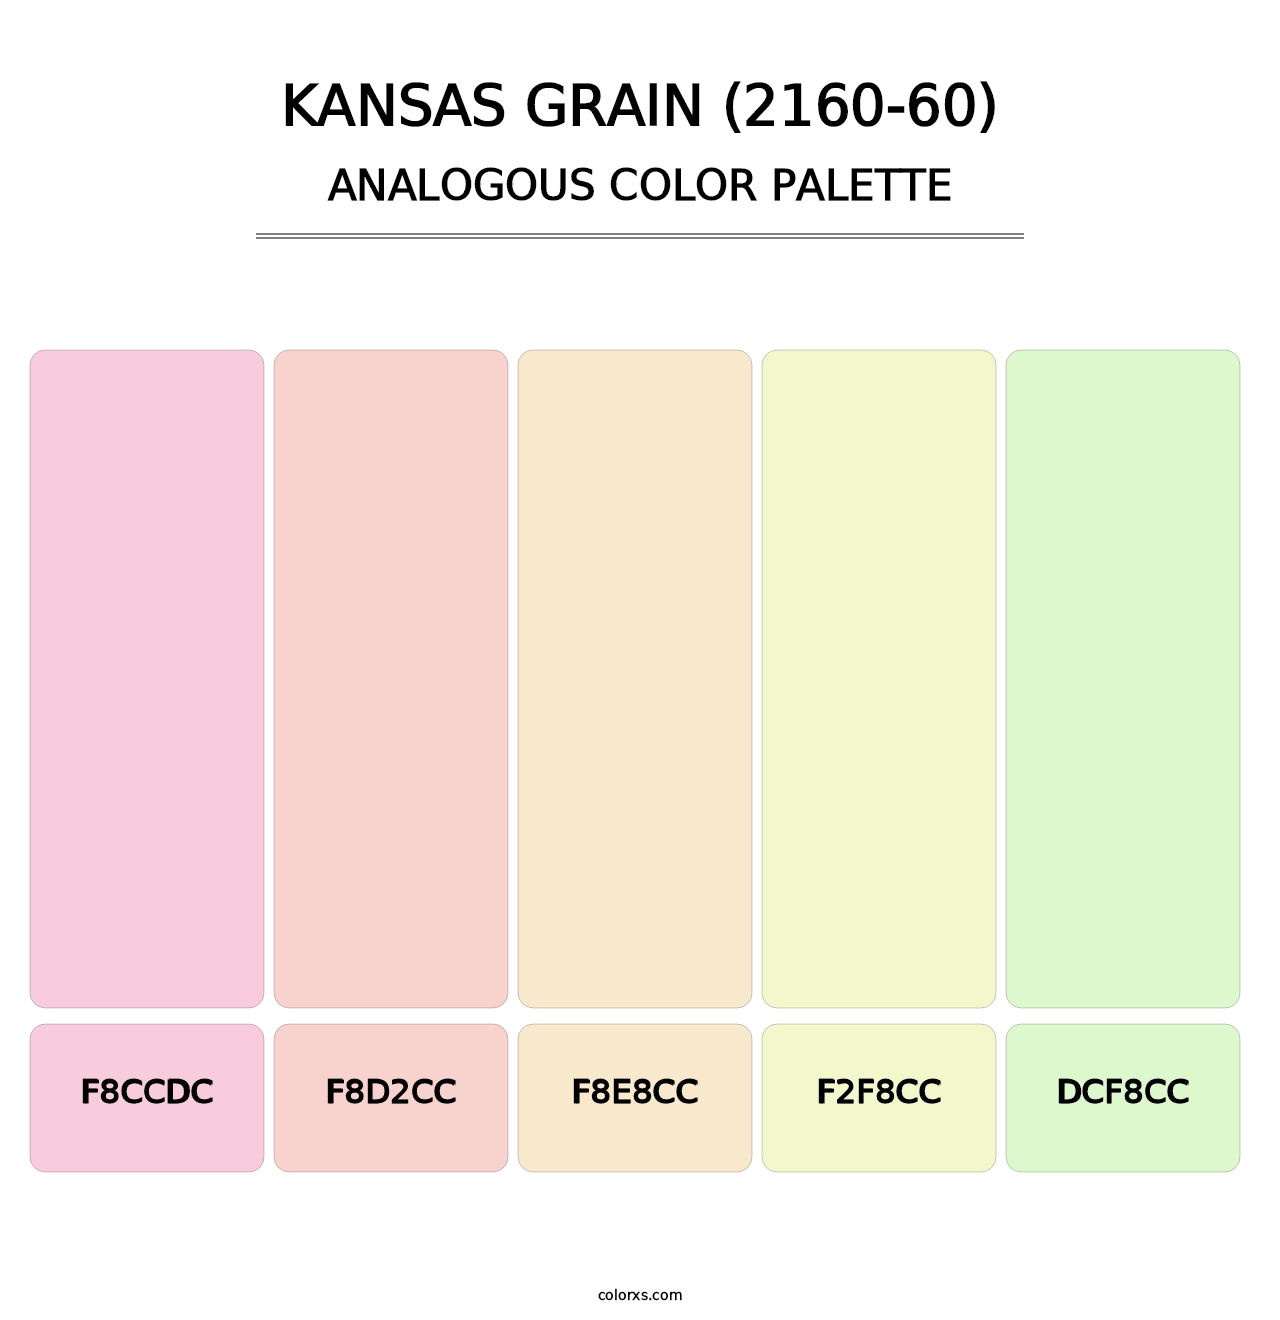 Kansas Grain (2160-60) - Analogous Color Palette